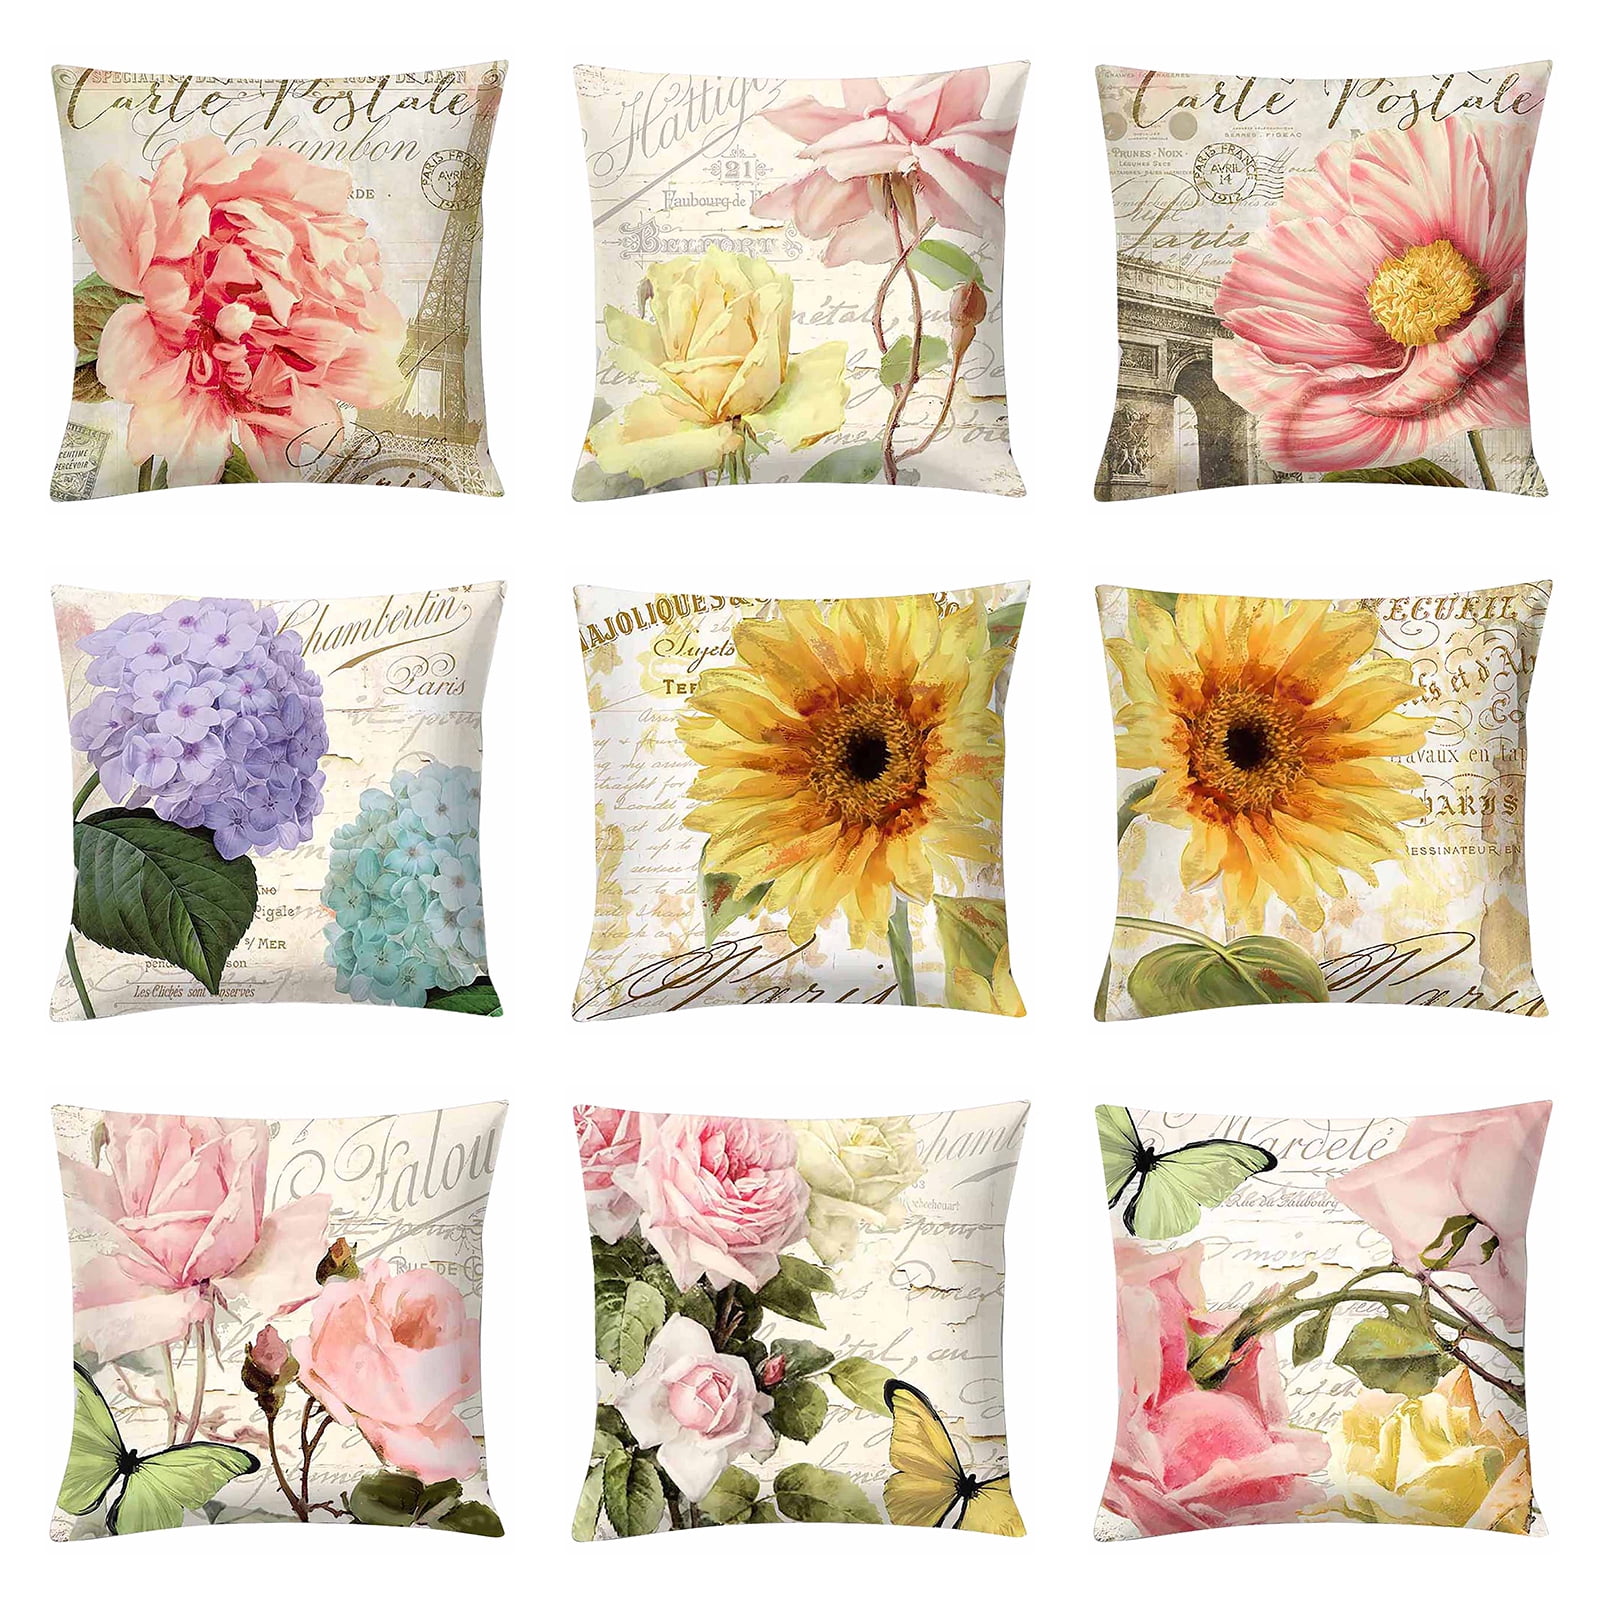 Details about   Dream Flower Cotton Linen Square Home Decorative Pillow Case Cushion Cover S 